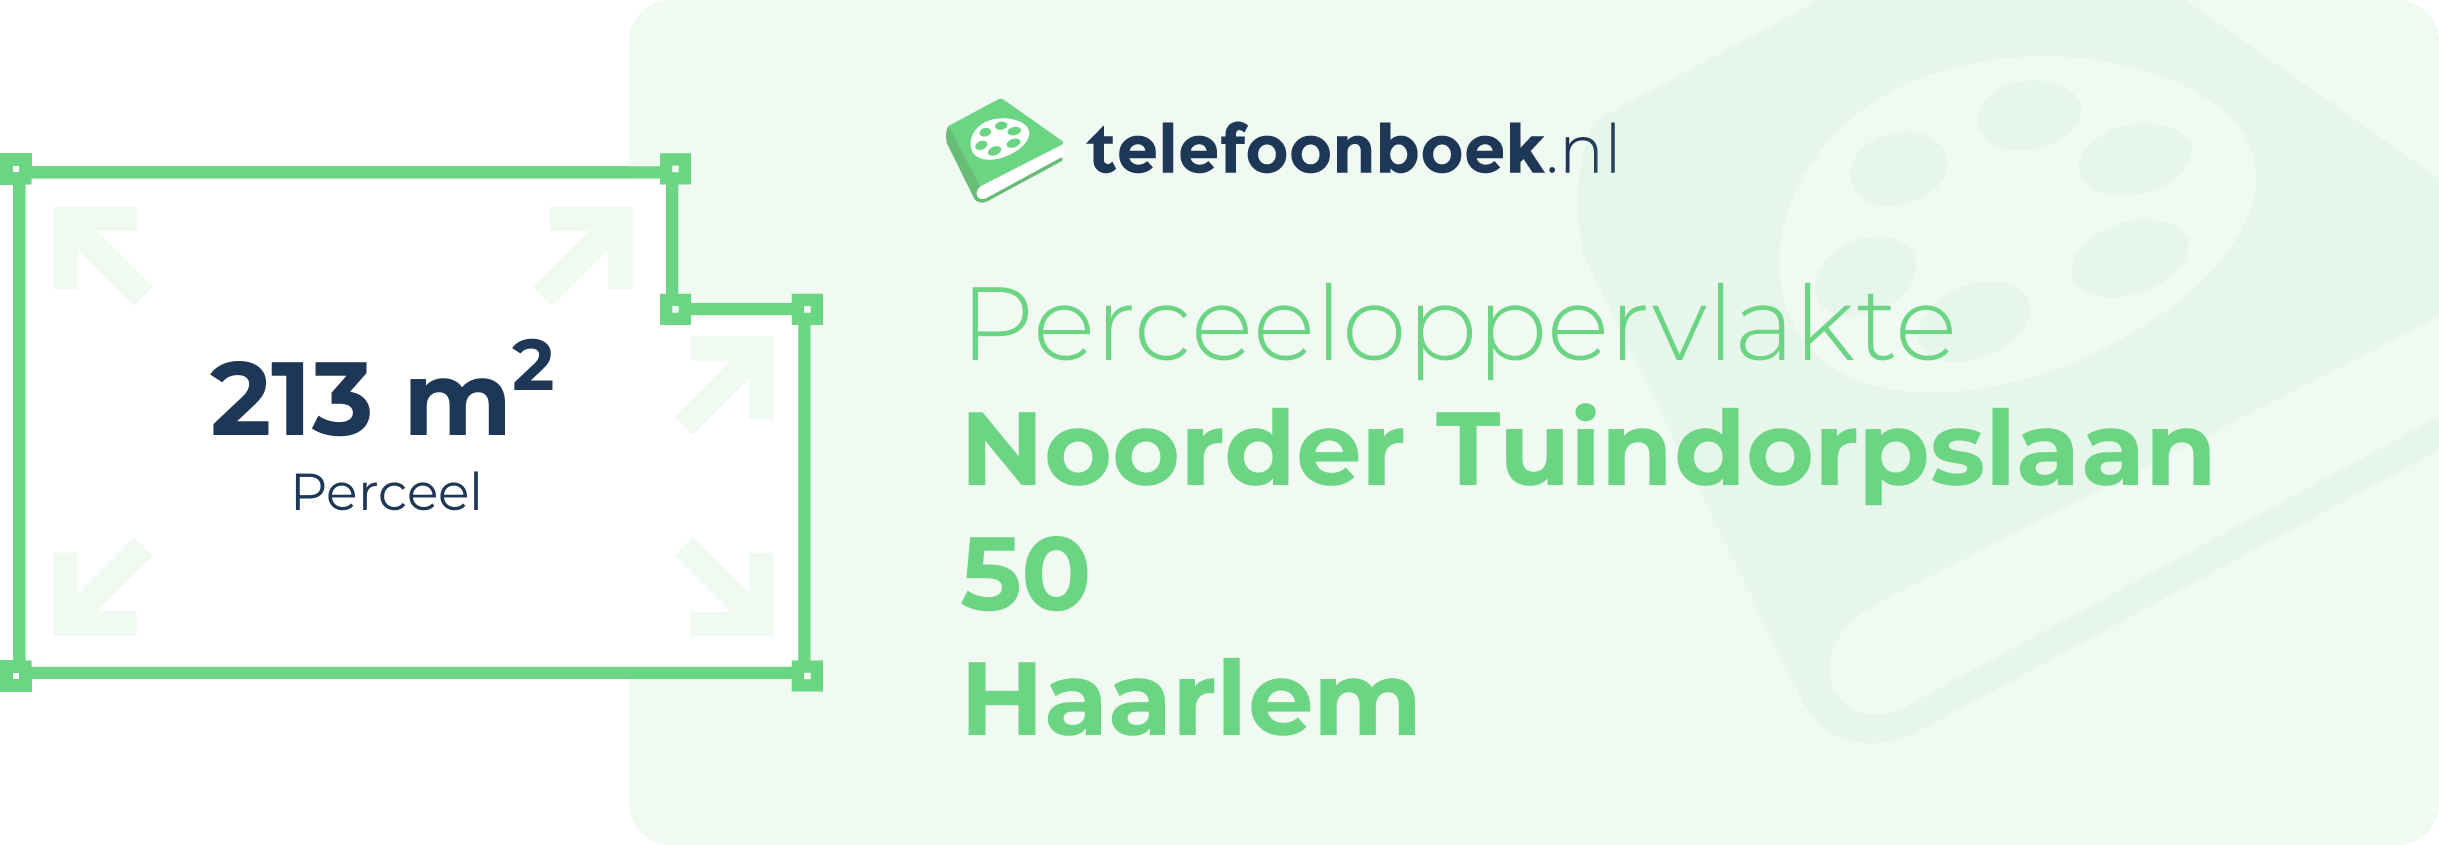 Perceeloppervlakte Noorder Tuindorpslaan 50 Haarlem